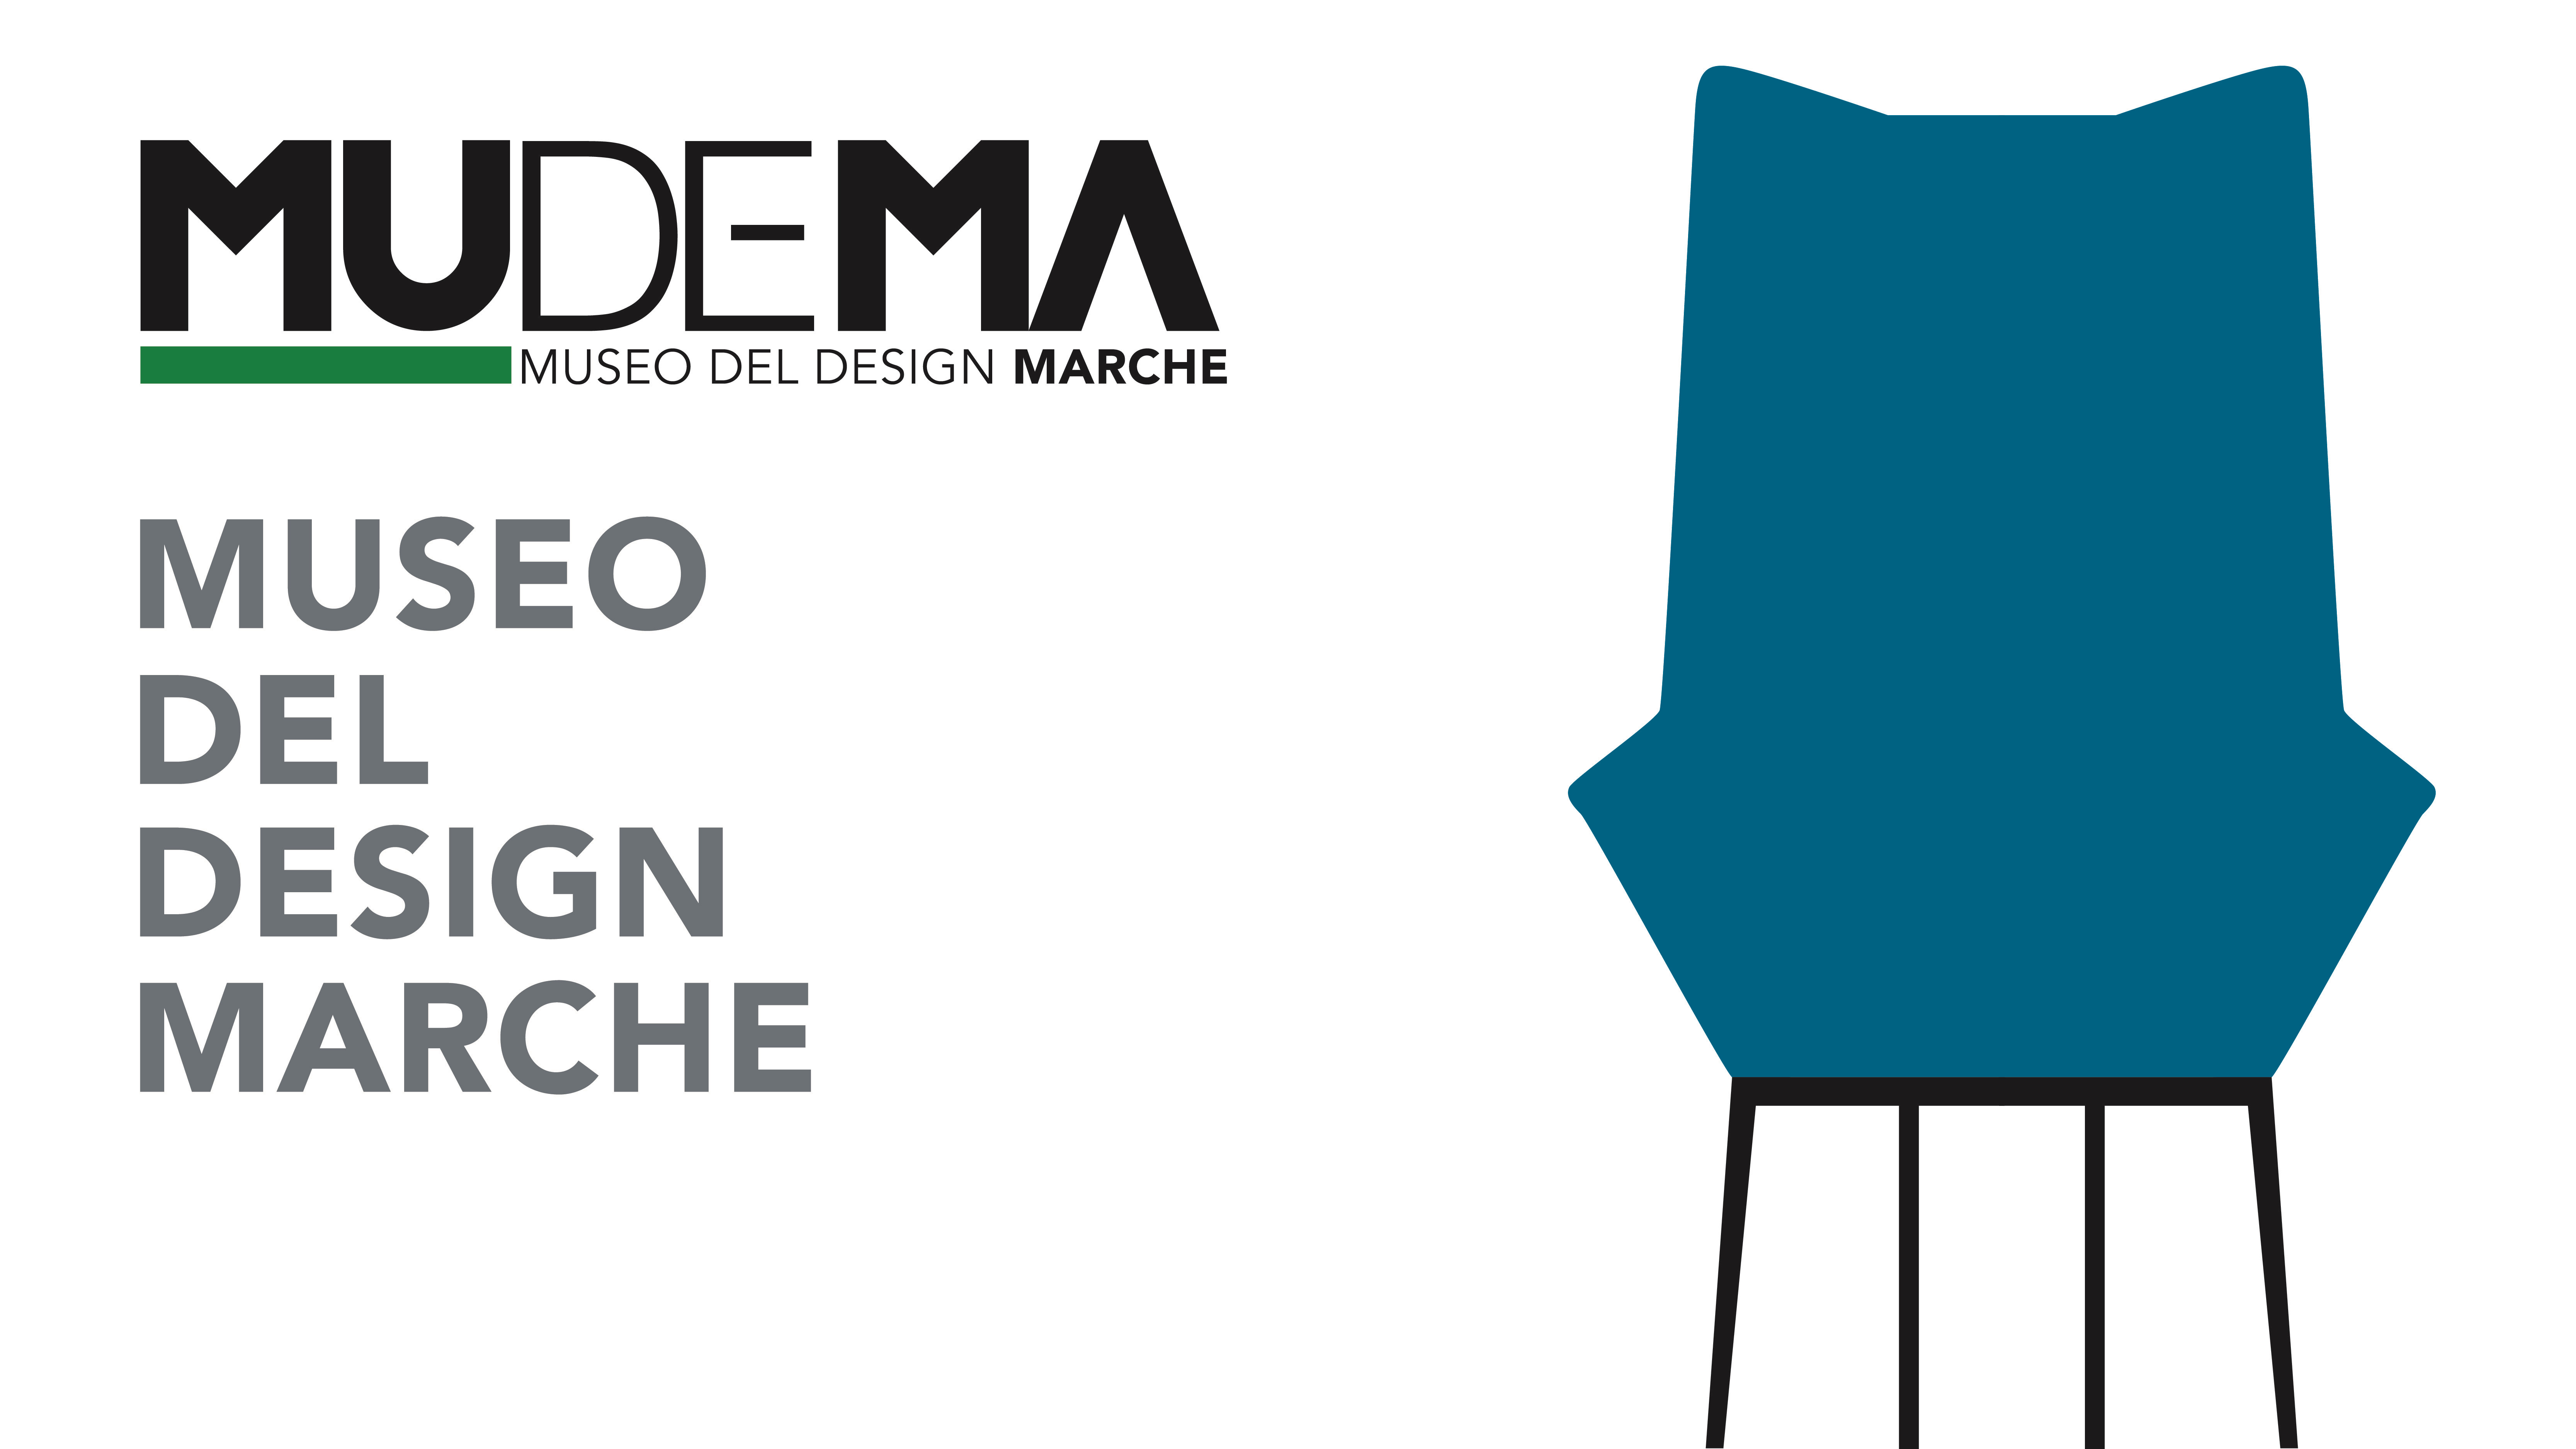 MUDEMA - Museo del Design delle Marche - Mudema.it: la piattaforma online del Museo del Design delle Marche sviluppata da Citynet in partnership con Poliarte 